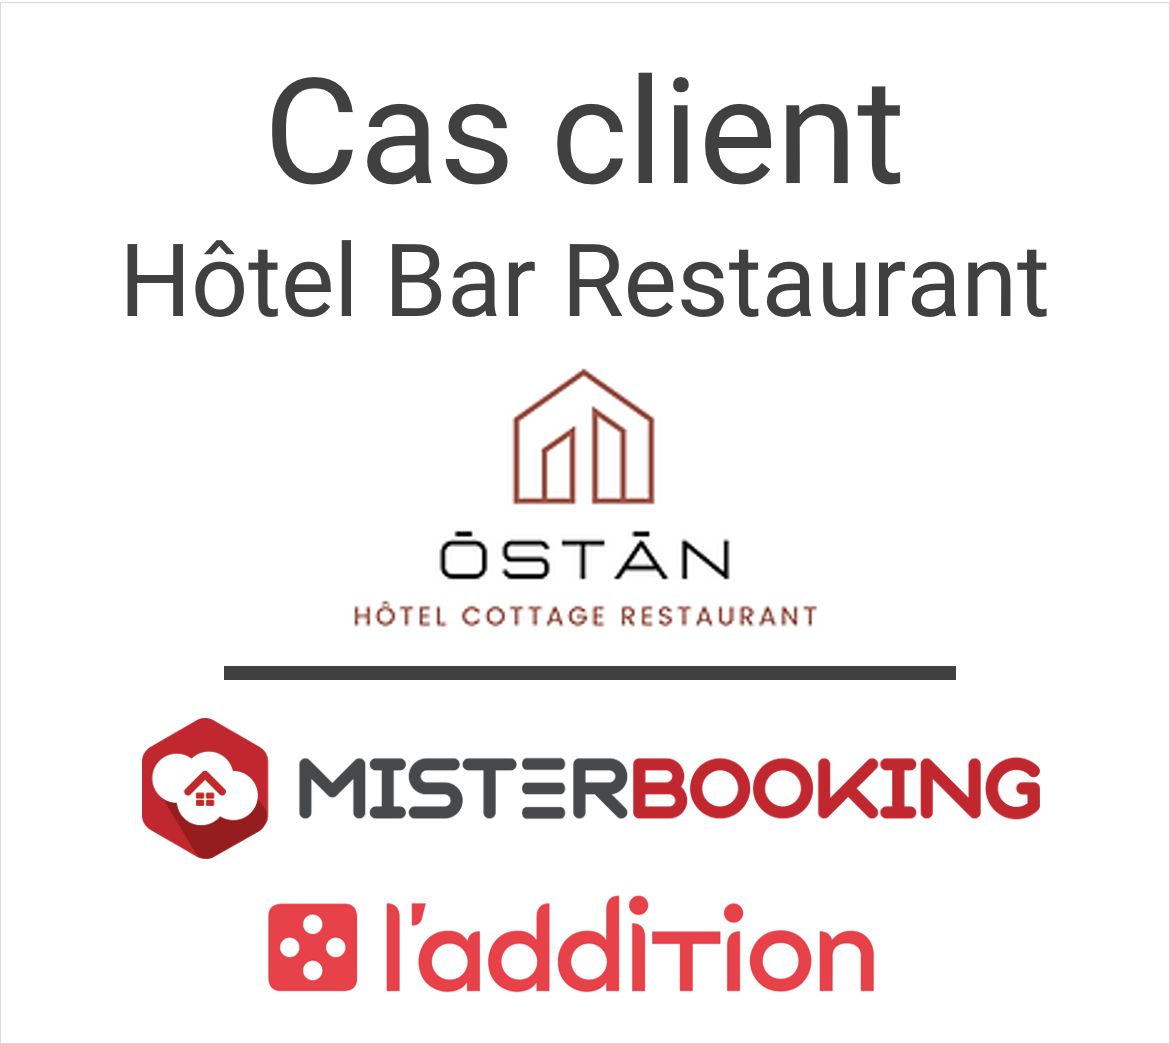 Cas client en partenariat avec le POS L’Addition : Ostan Hôtel Restaurant